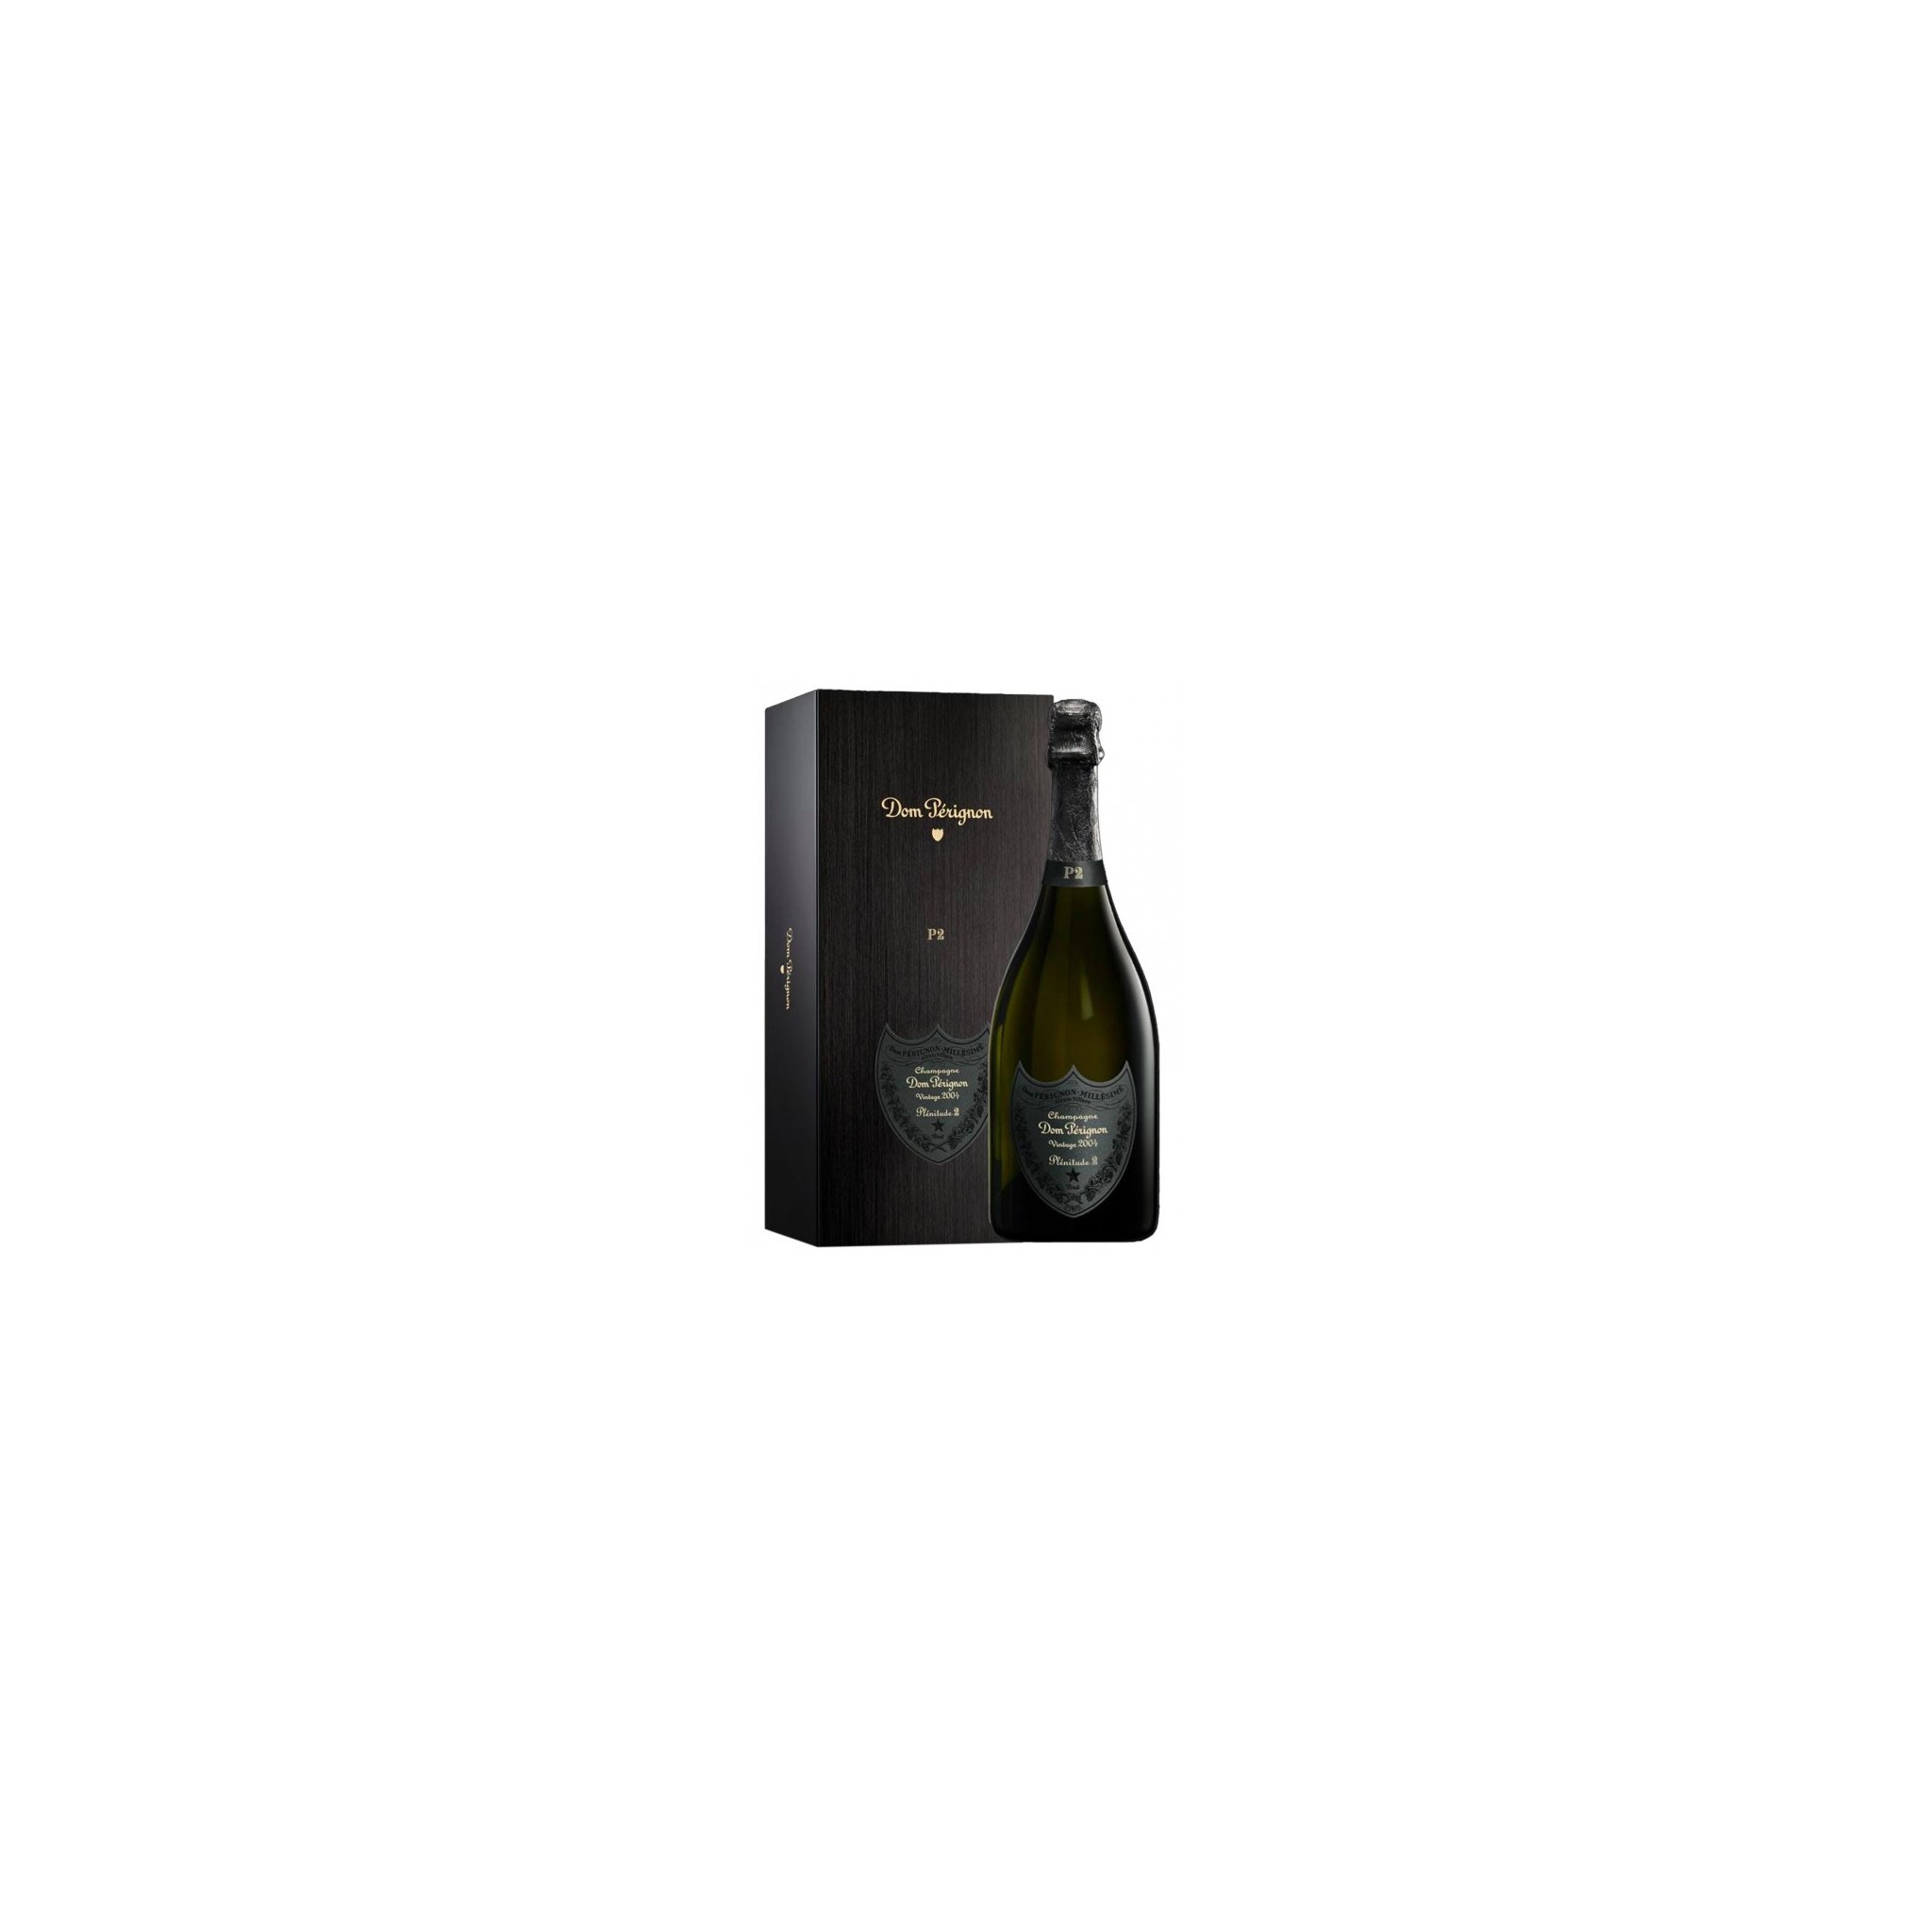 2004 Dom Perignon P2 Champagne